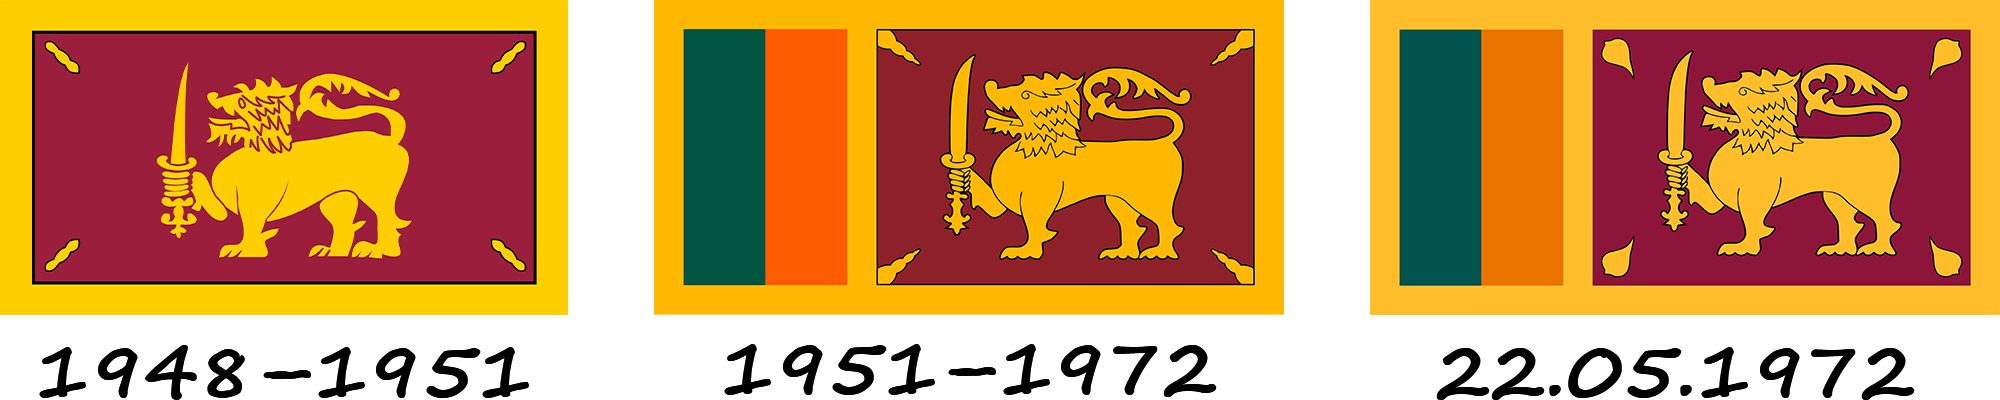 Історія прапора Шрі-Ланки